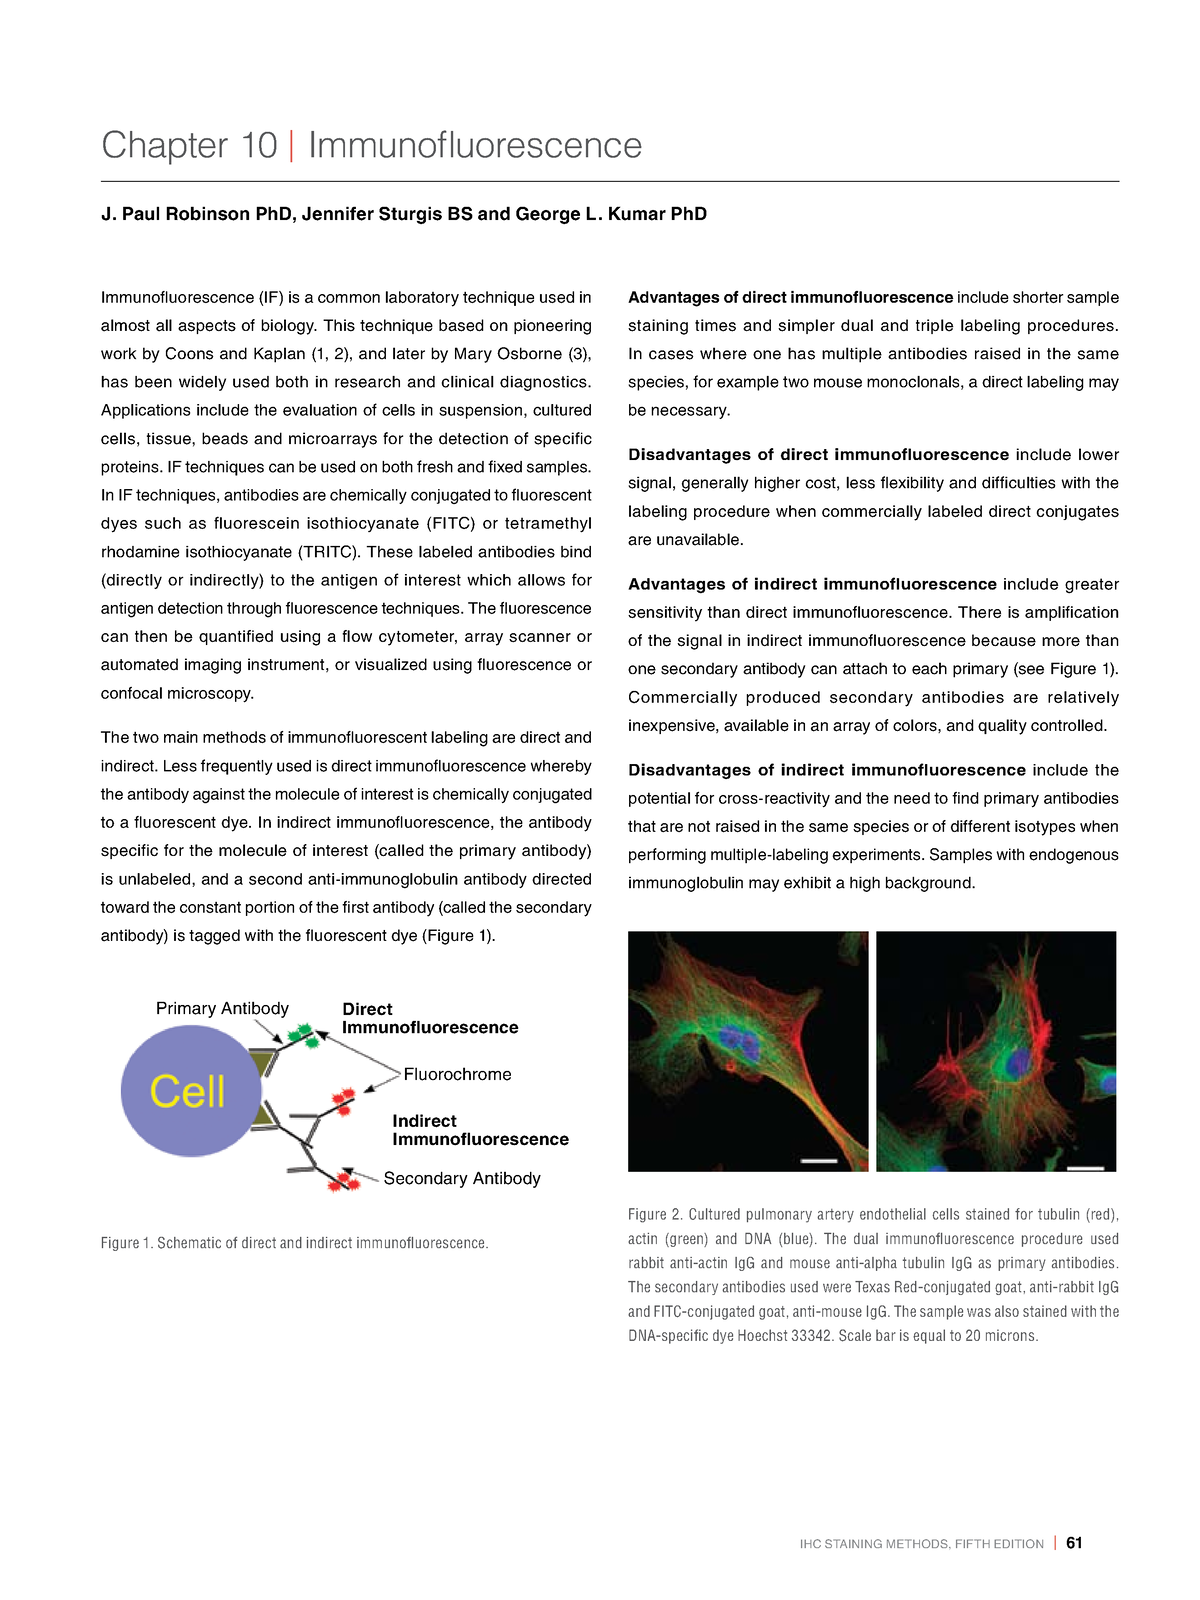 Immunofluroscence - Mechanism of immunefleruonce method - IHC STAINING ...